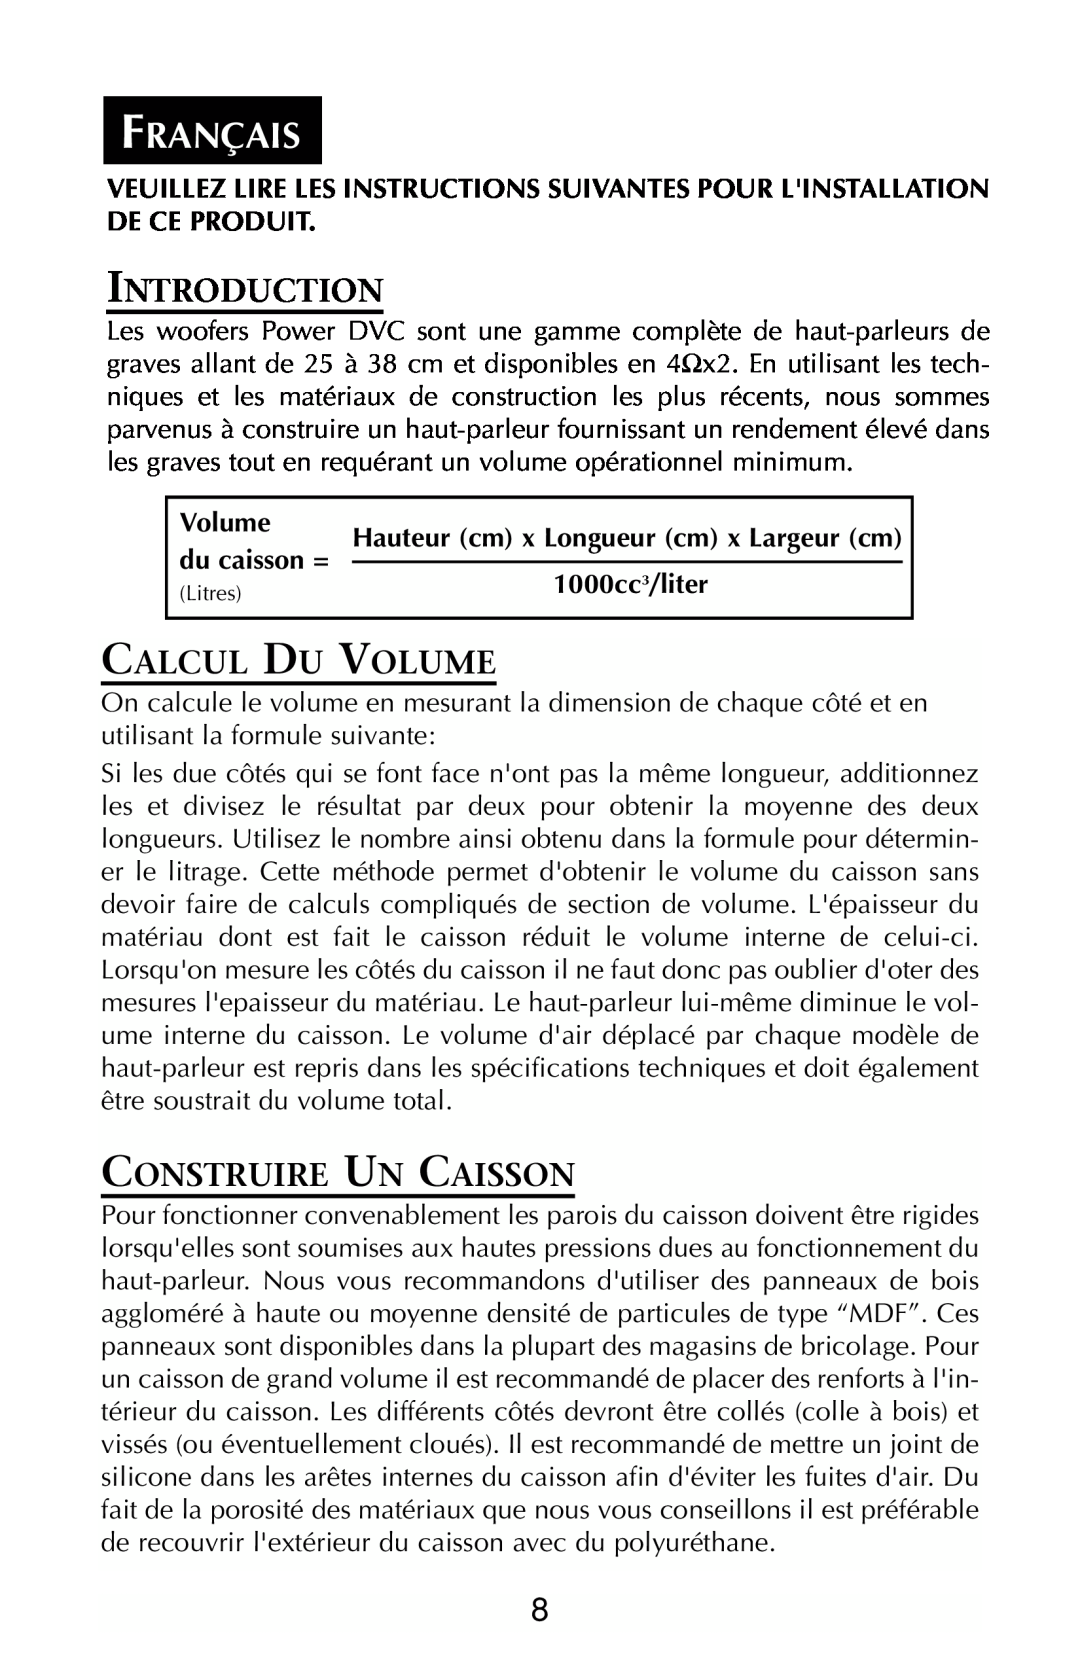 Rockford Fosgate RFP3208 Français, Introduction, Calcul Du Volume, Construire Un Caisson, du caisson =, 1000cc3/liter 